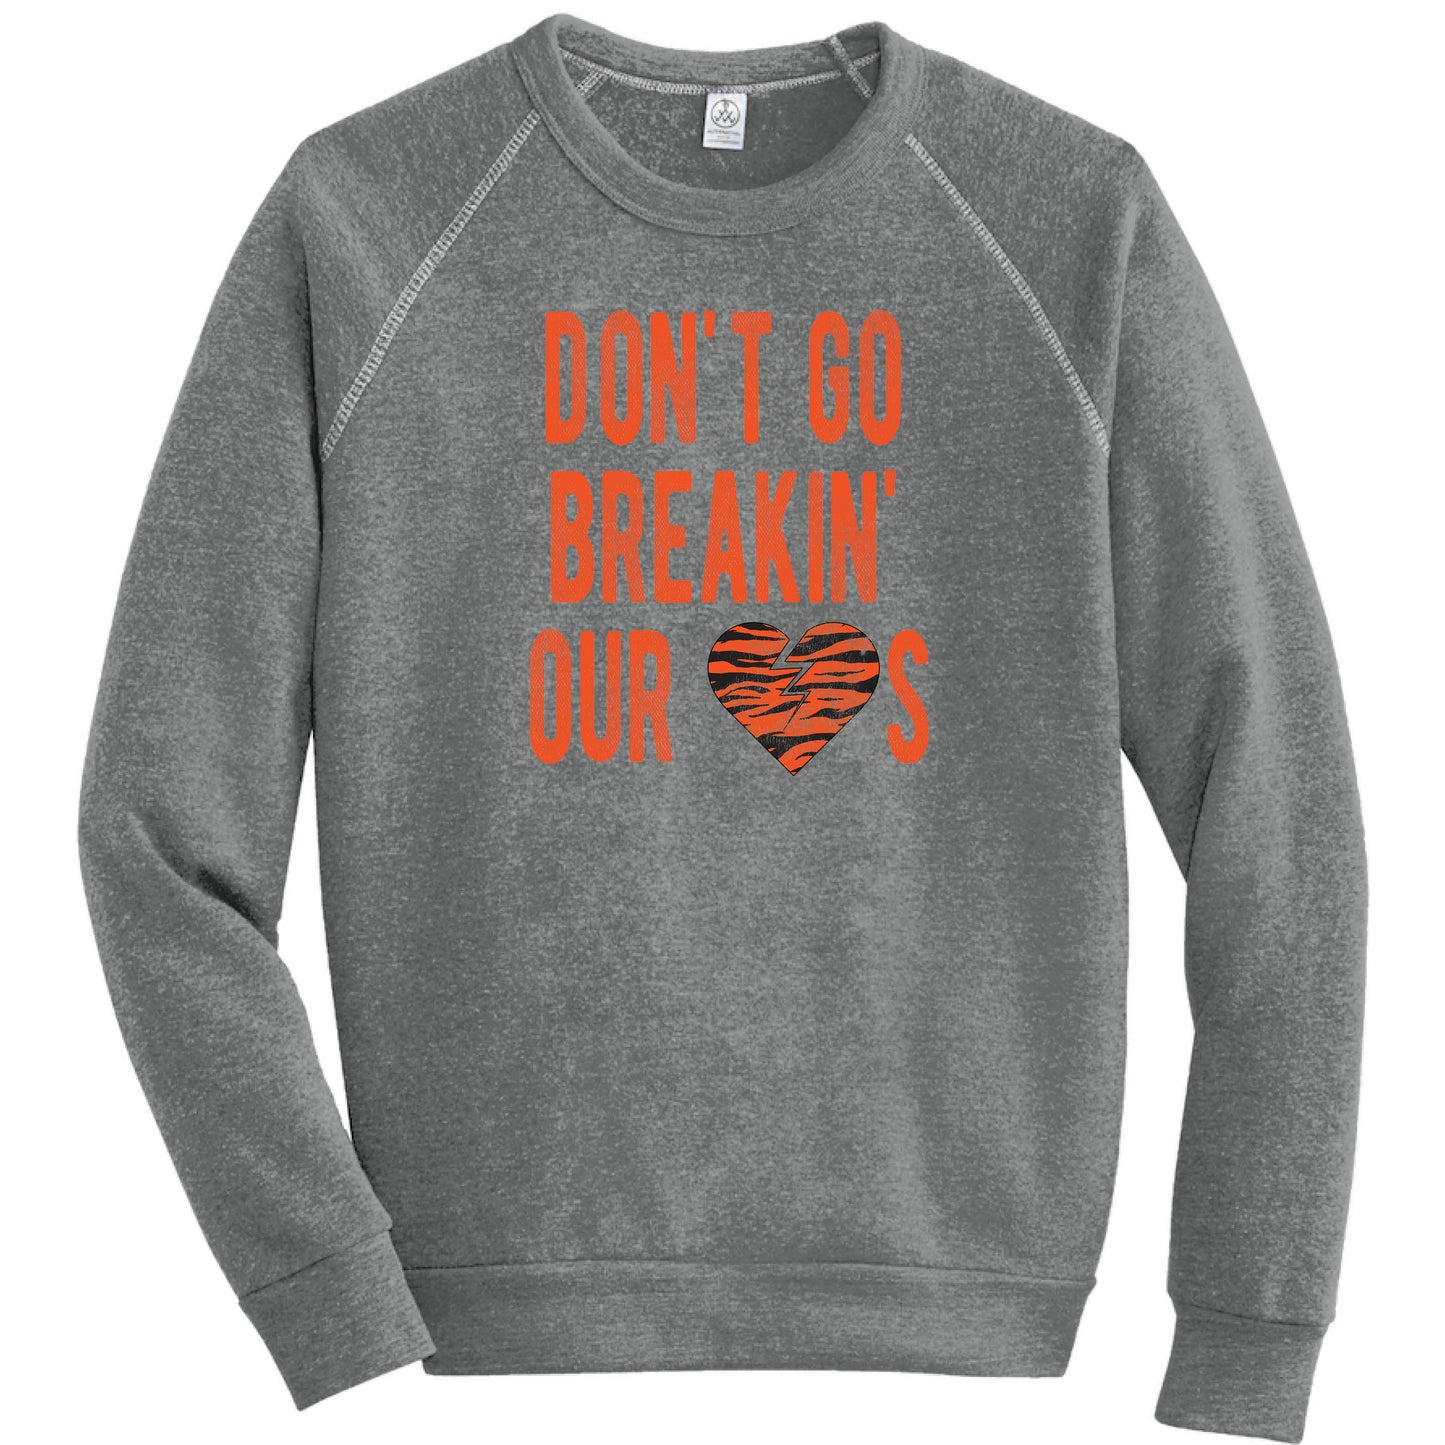 Don't Go Breaking Our Hearts - Cincinnati - Fleece Sweatshirt